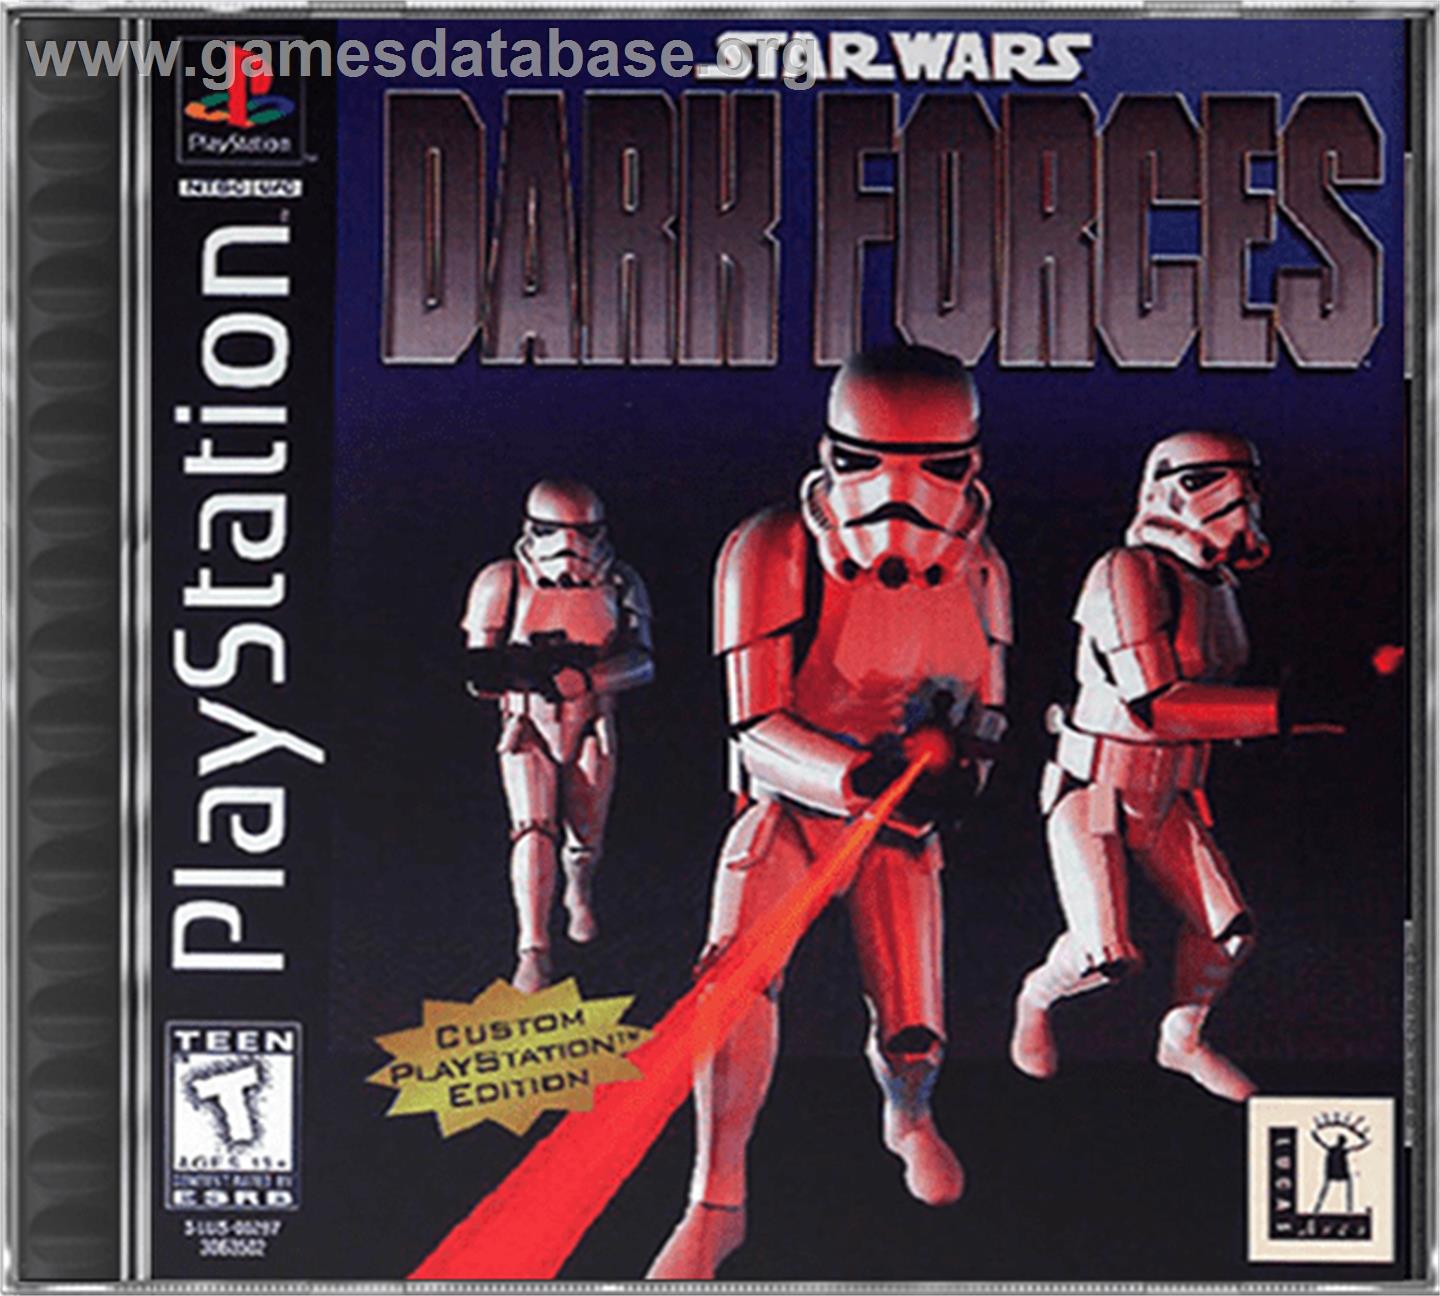 Star Wars: Dark Forces - Sony Playstation - Artwork - Box